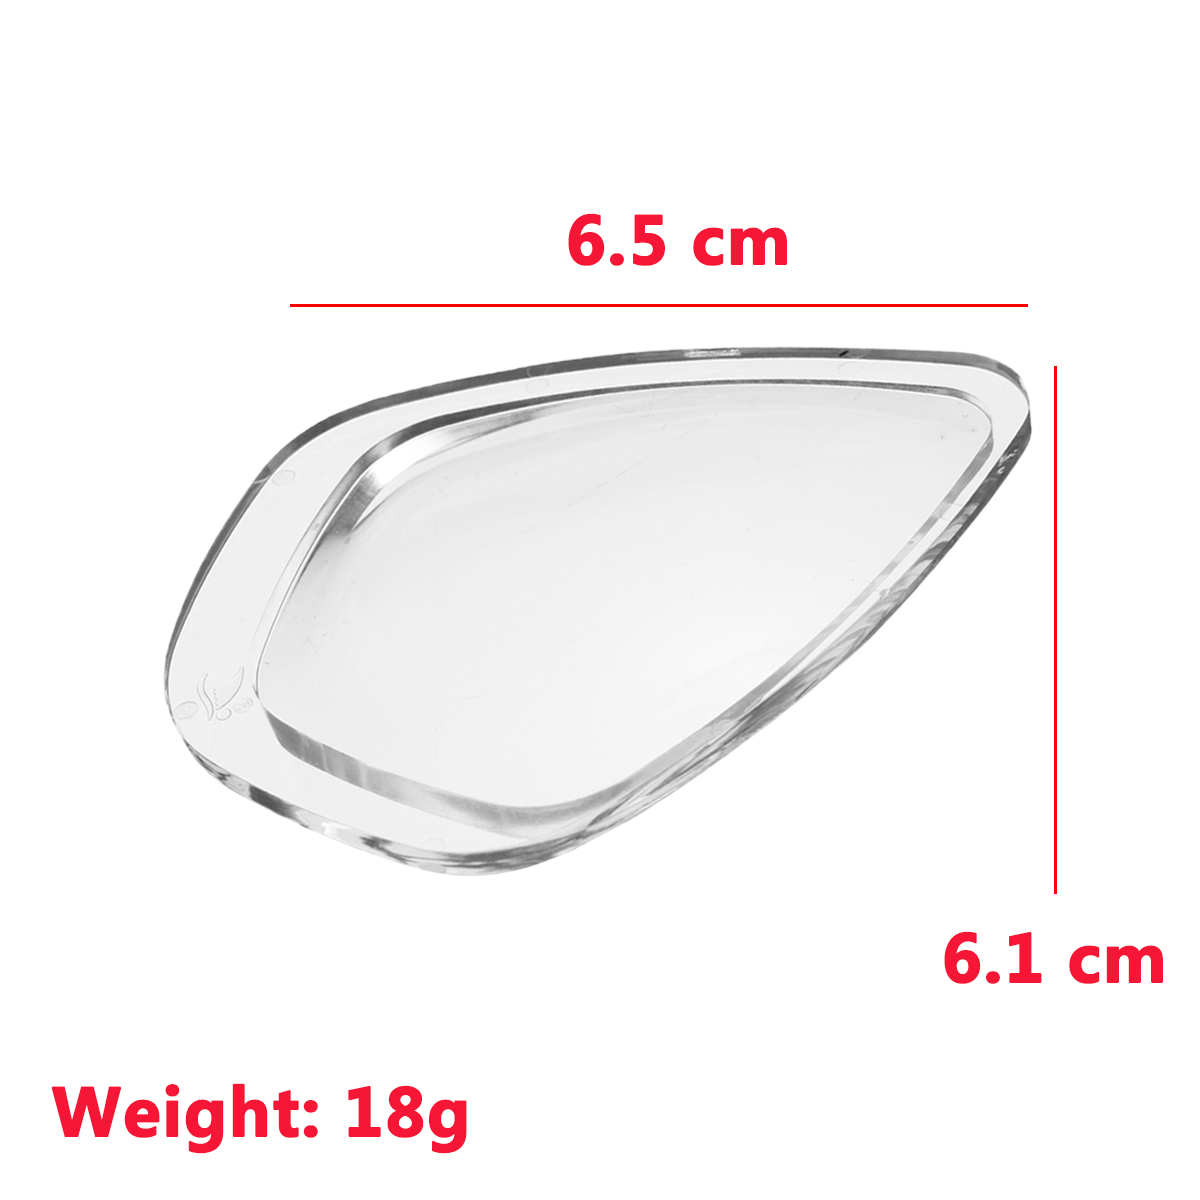 Transparent-Resin-Universal-Swimming-Diving-Shortsightedness-Glasses-Myopia-Len-Lens-1474744-4